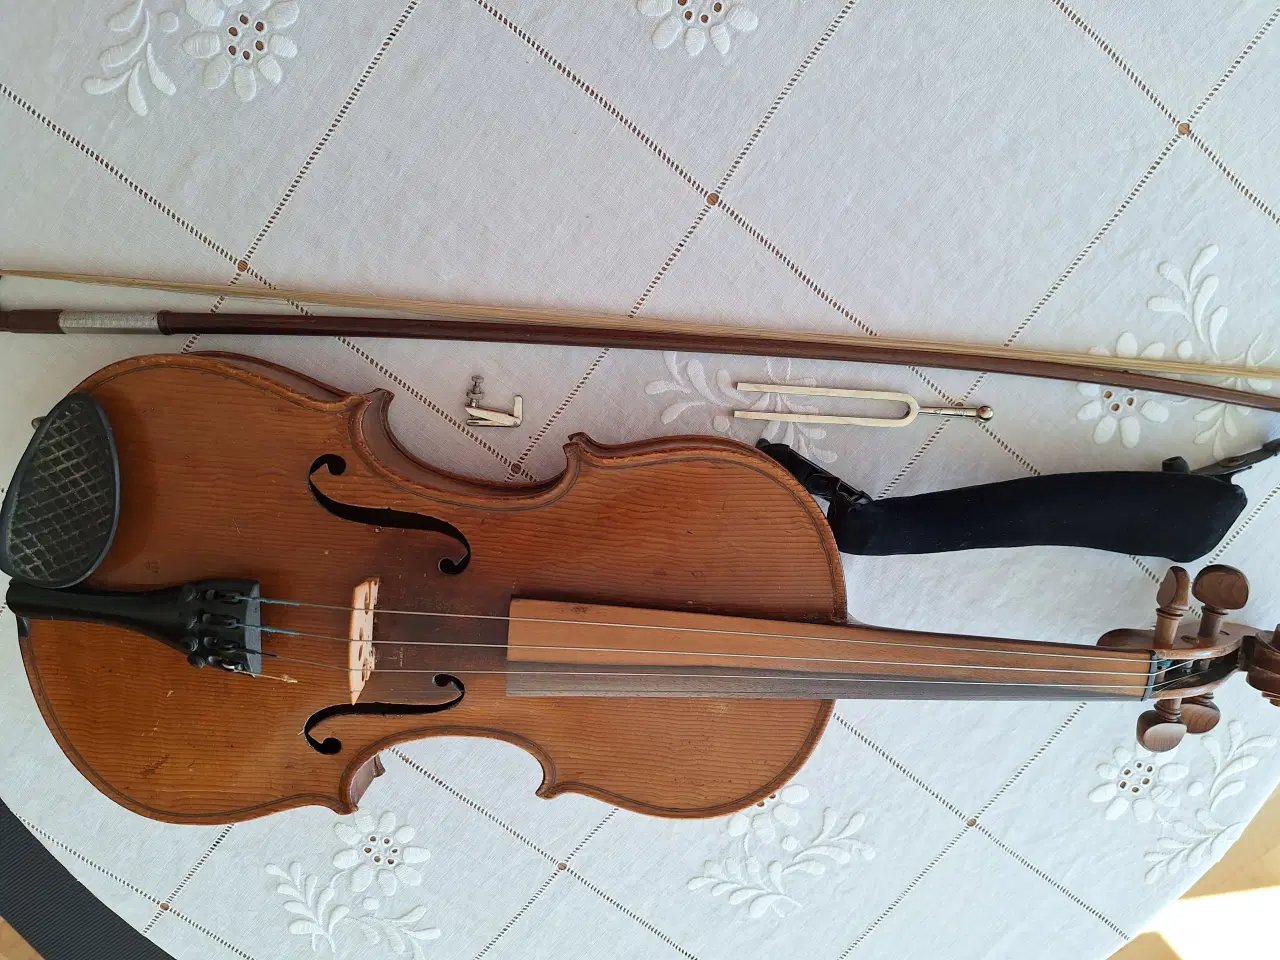 Billede 2 - Violin med bue og kasse